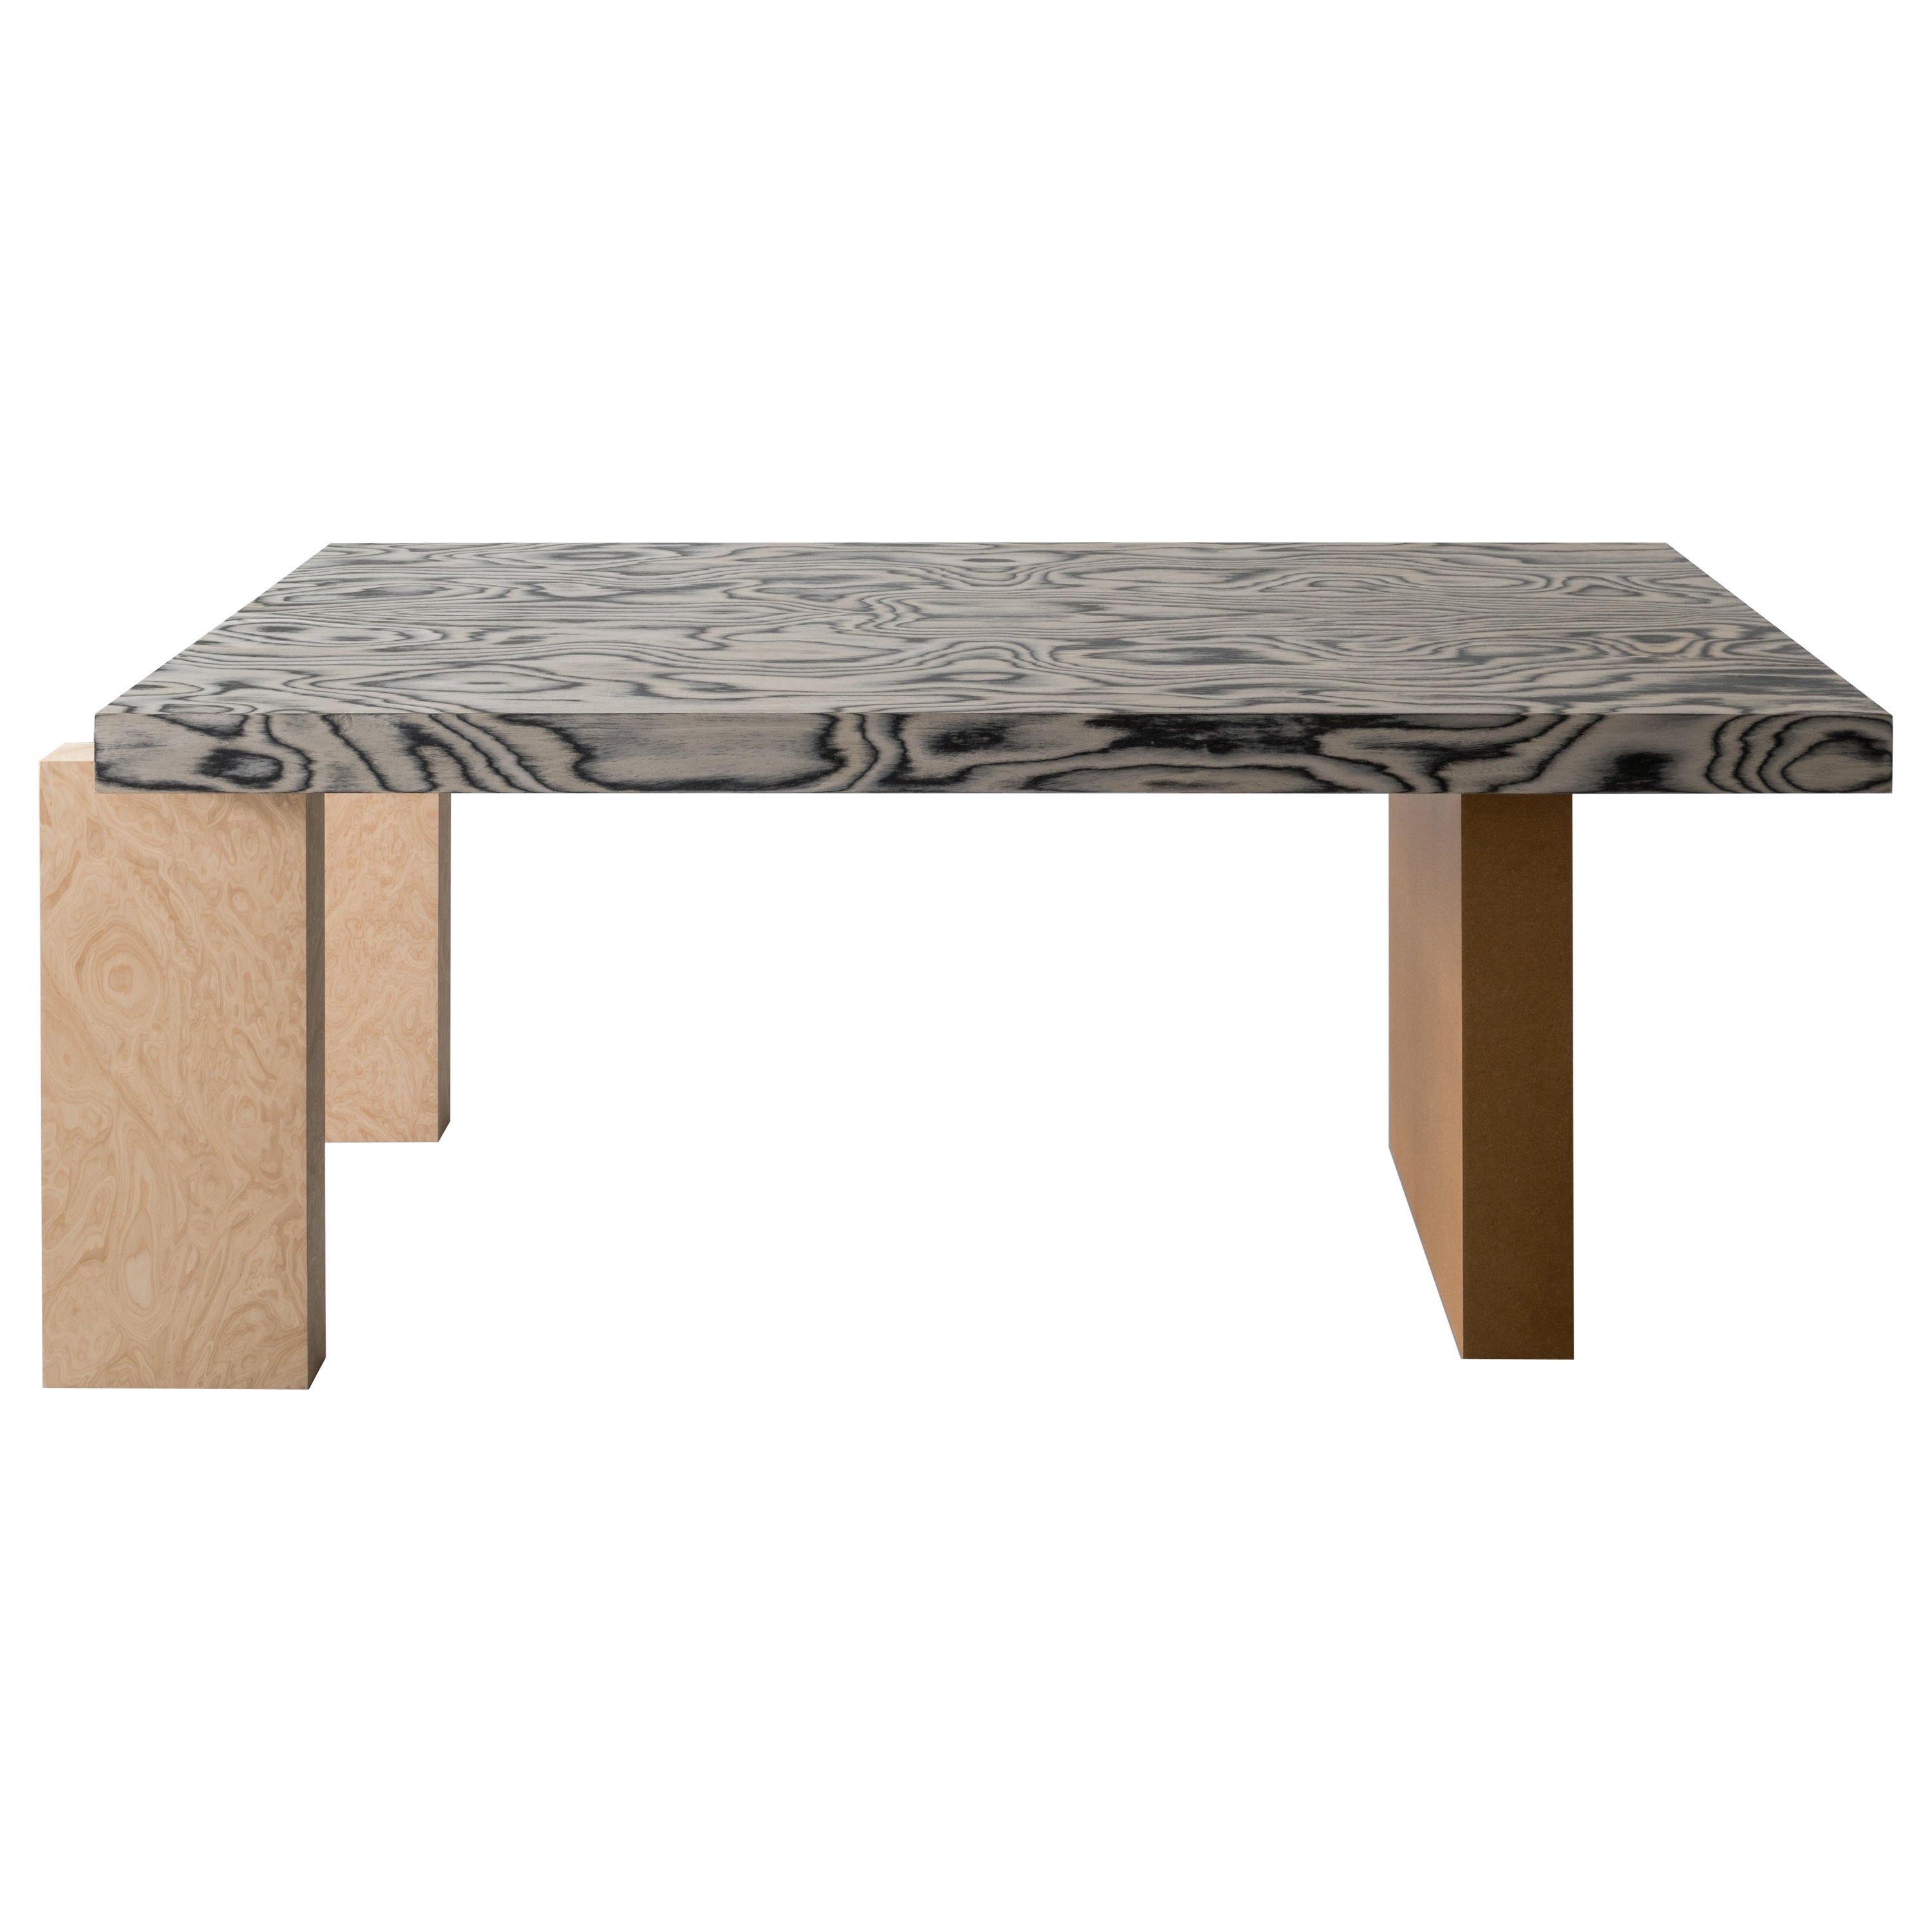 Zeitgenössischer furnierter Esstisch aus Holz mit ALPI Sottsass furnierter Tischplatte